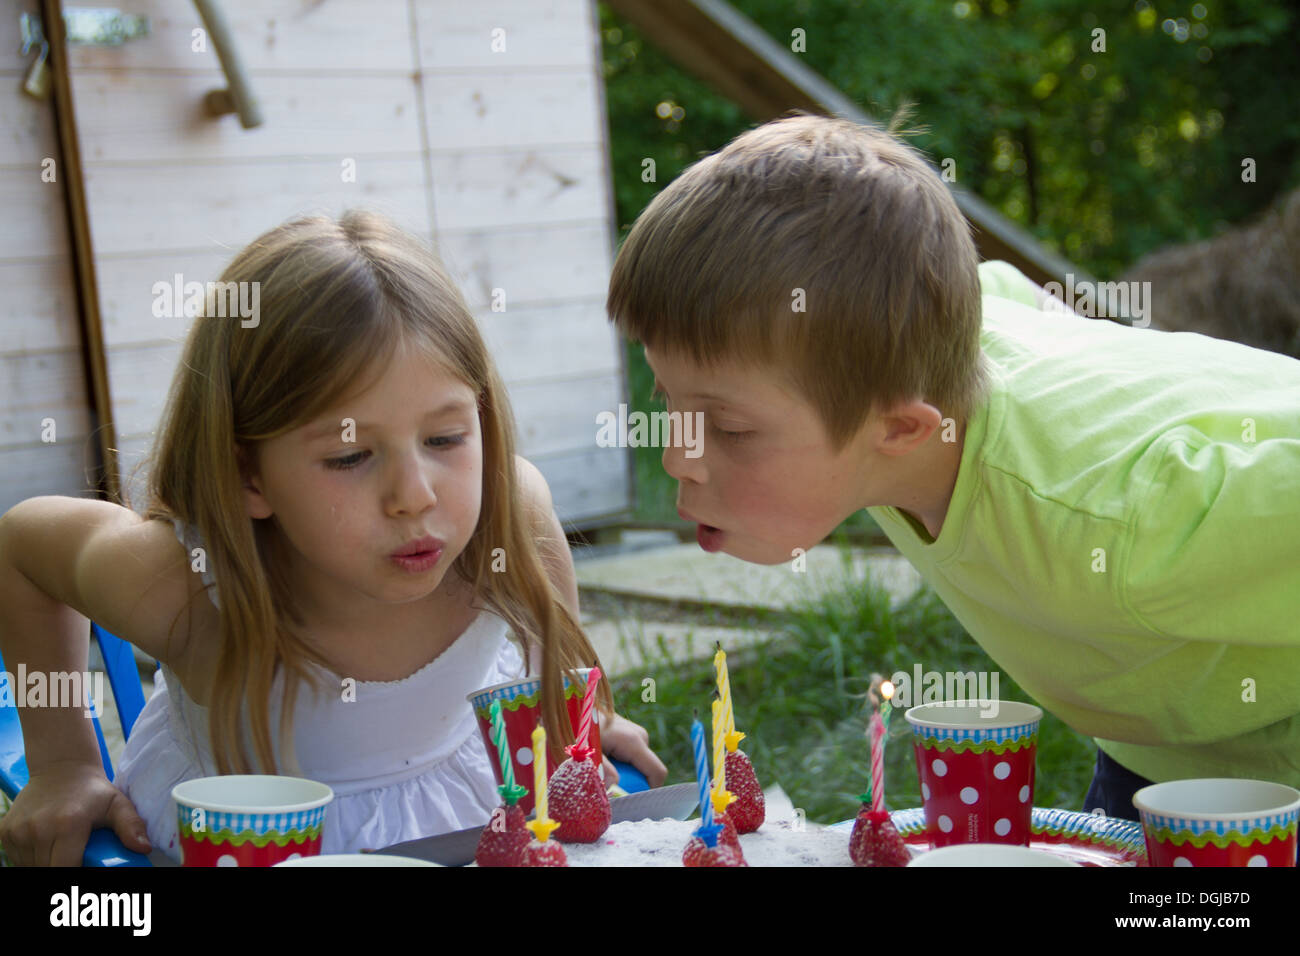 Garden Party familia compartiendo la torta de cumpleaños. El niño de 3 años  está disfrutando de su obra, el jardín está decorado con globos y los  colores son brillantes Fotografía de stock 